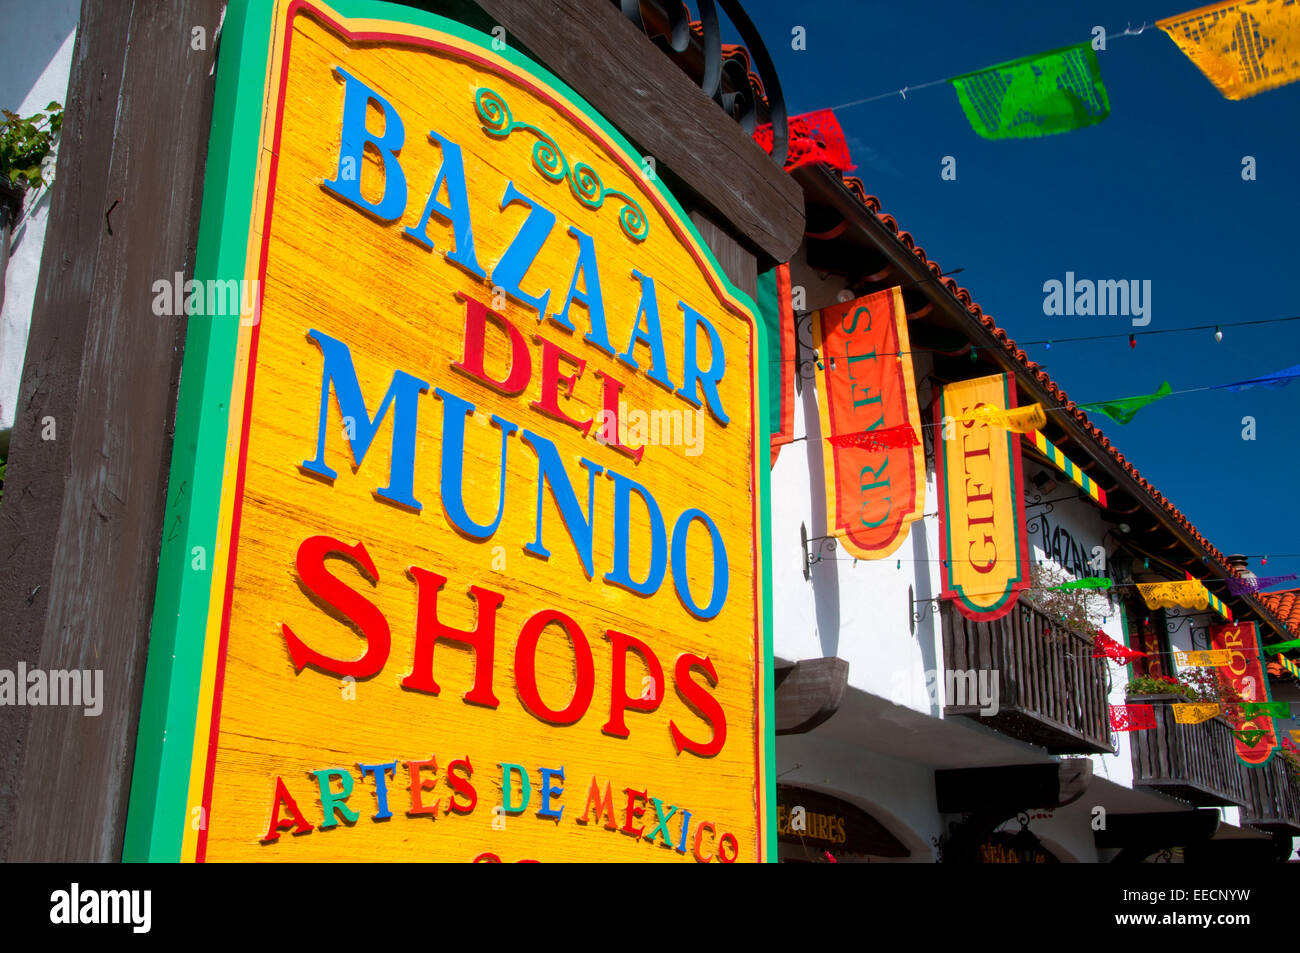 Bazaar del Mundo Shop segno, la Citta' Vecchia di San Diego, San Diego, California Foto Stock